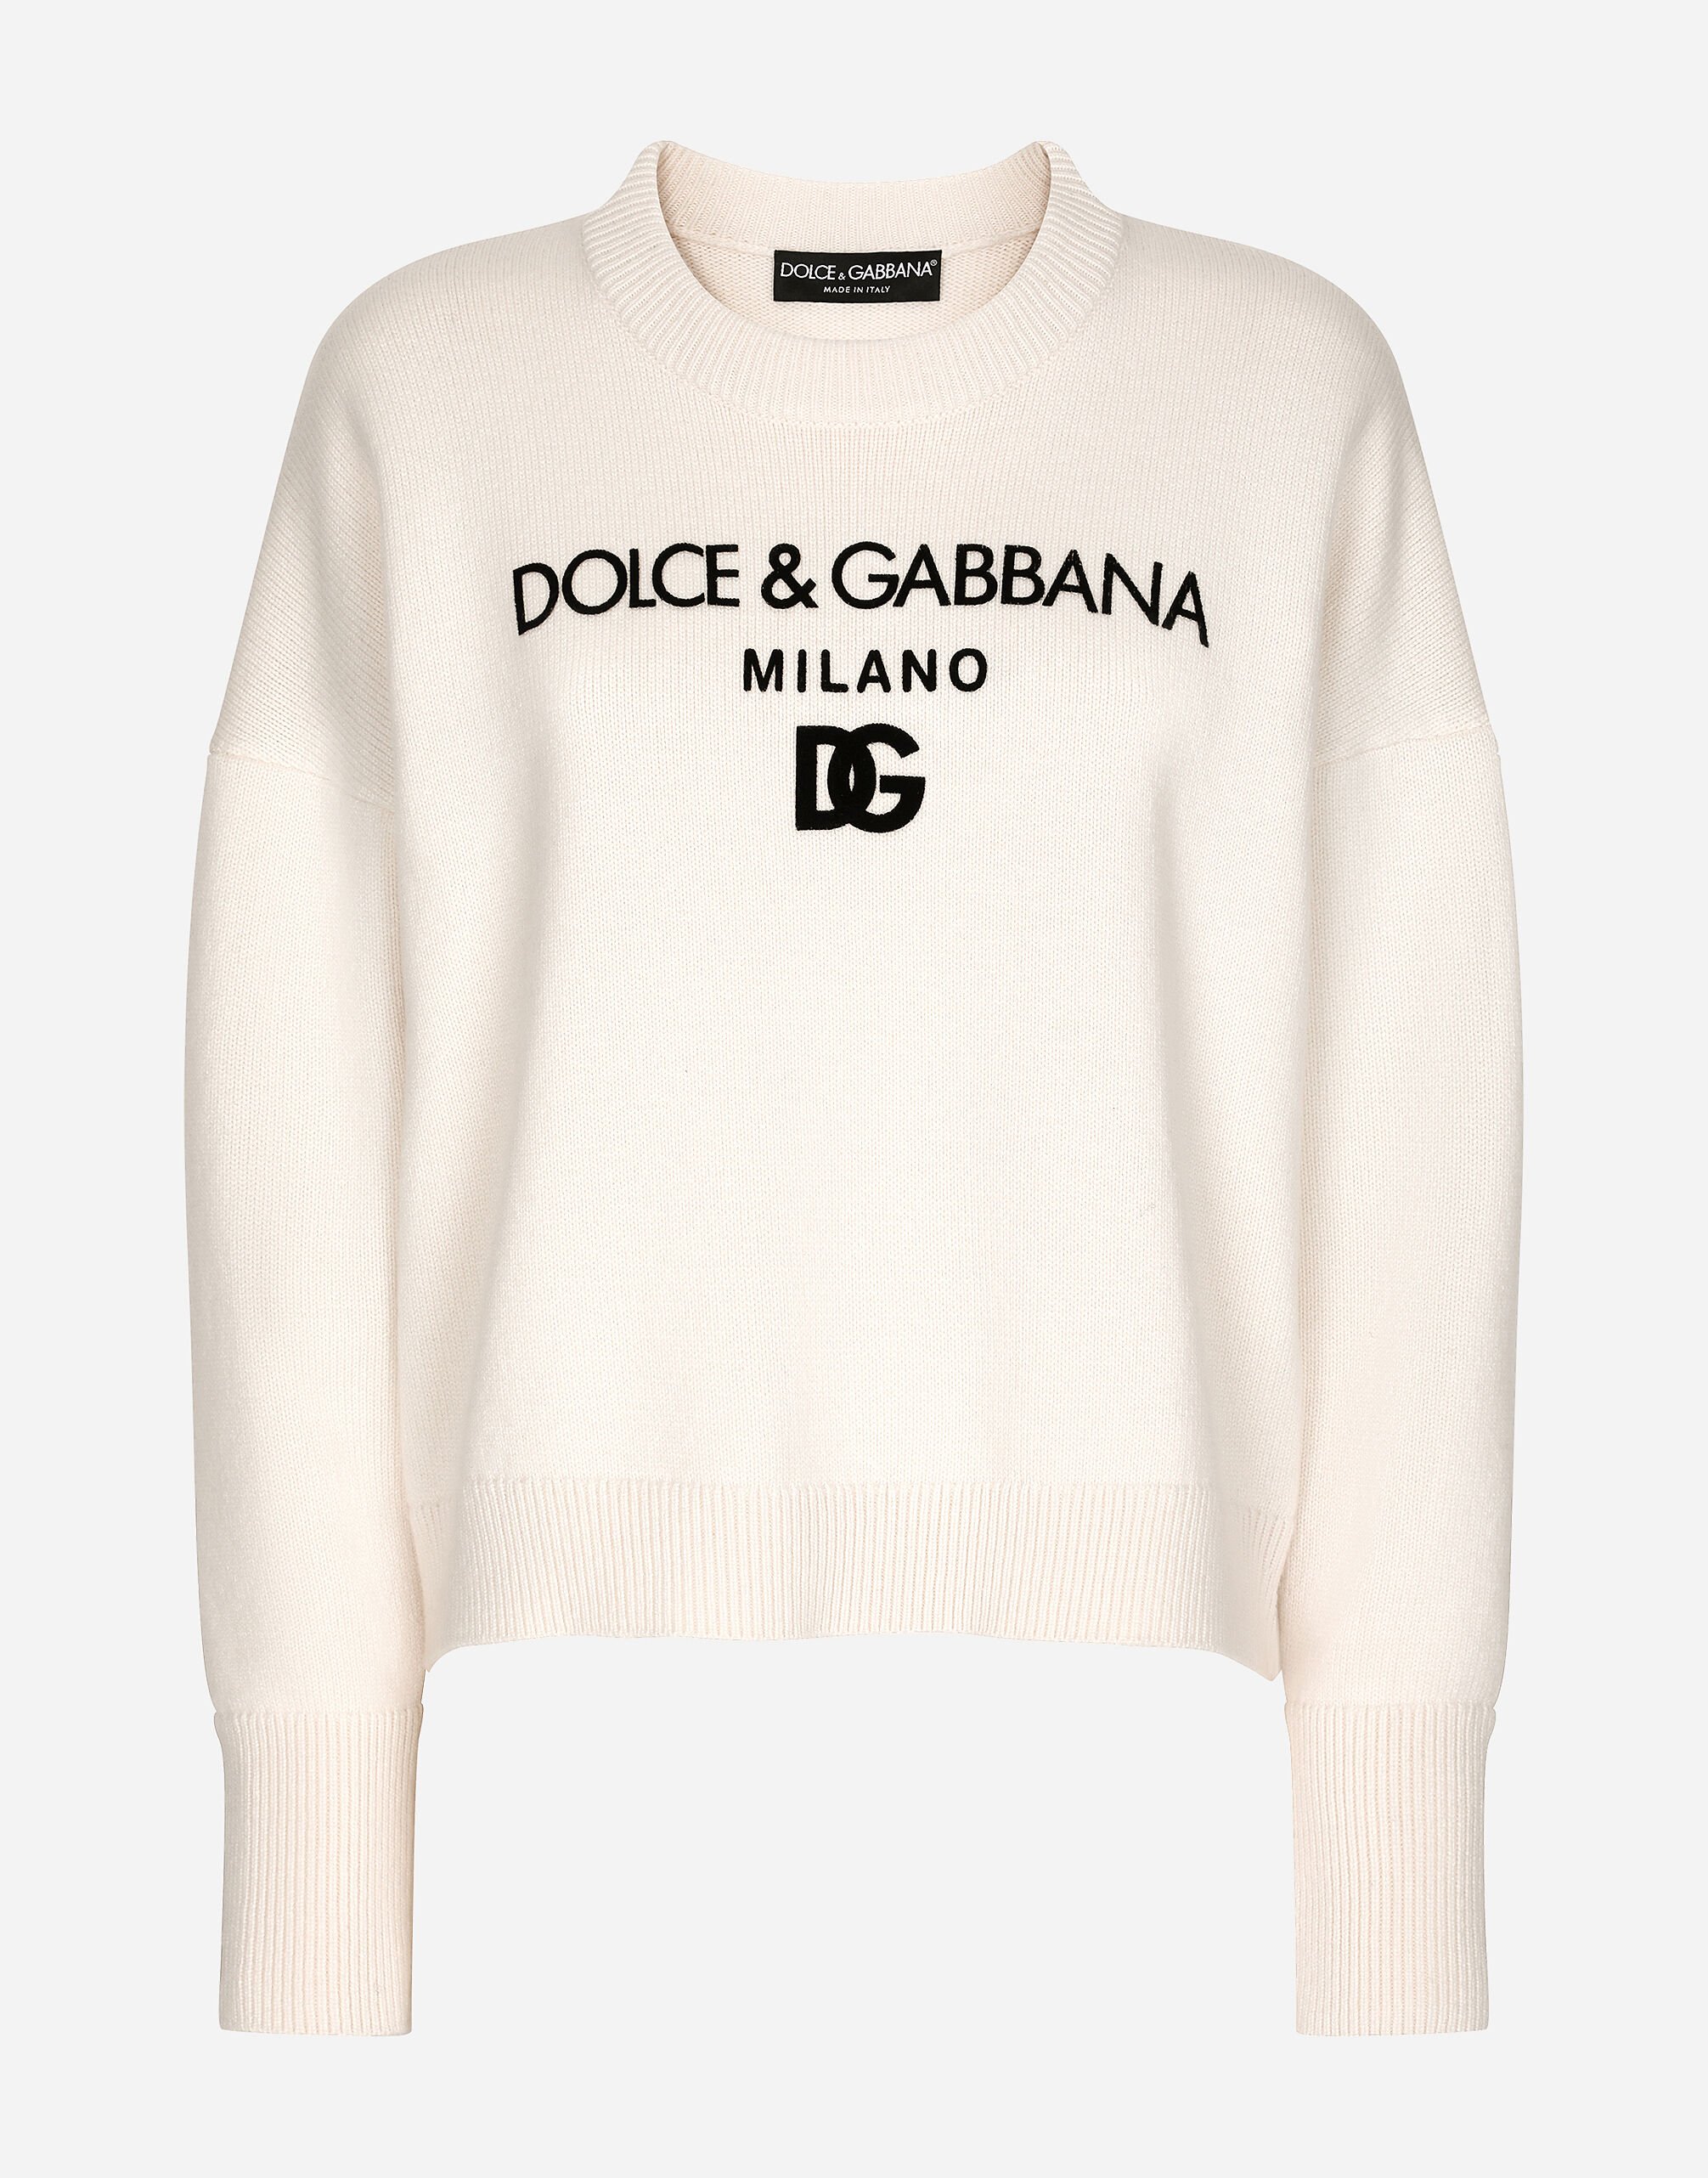 Dolce & Gabbana سترة كشمير مرقطة بشعار DG متعدد الألوان FXI25TJBVX8